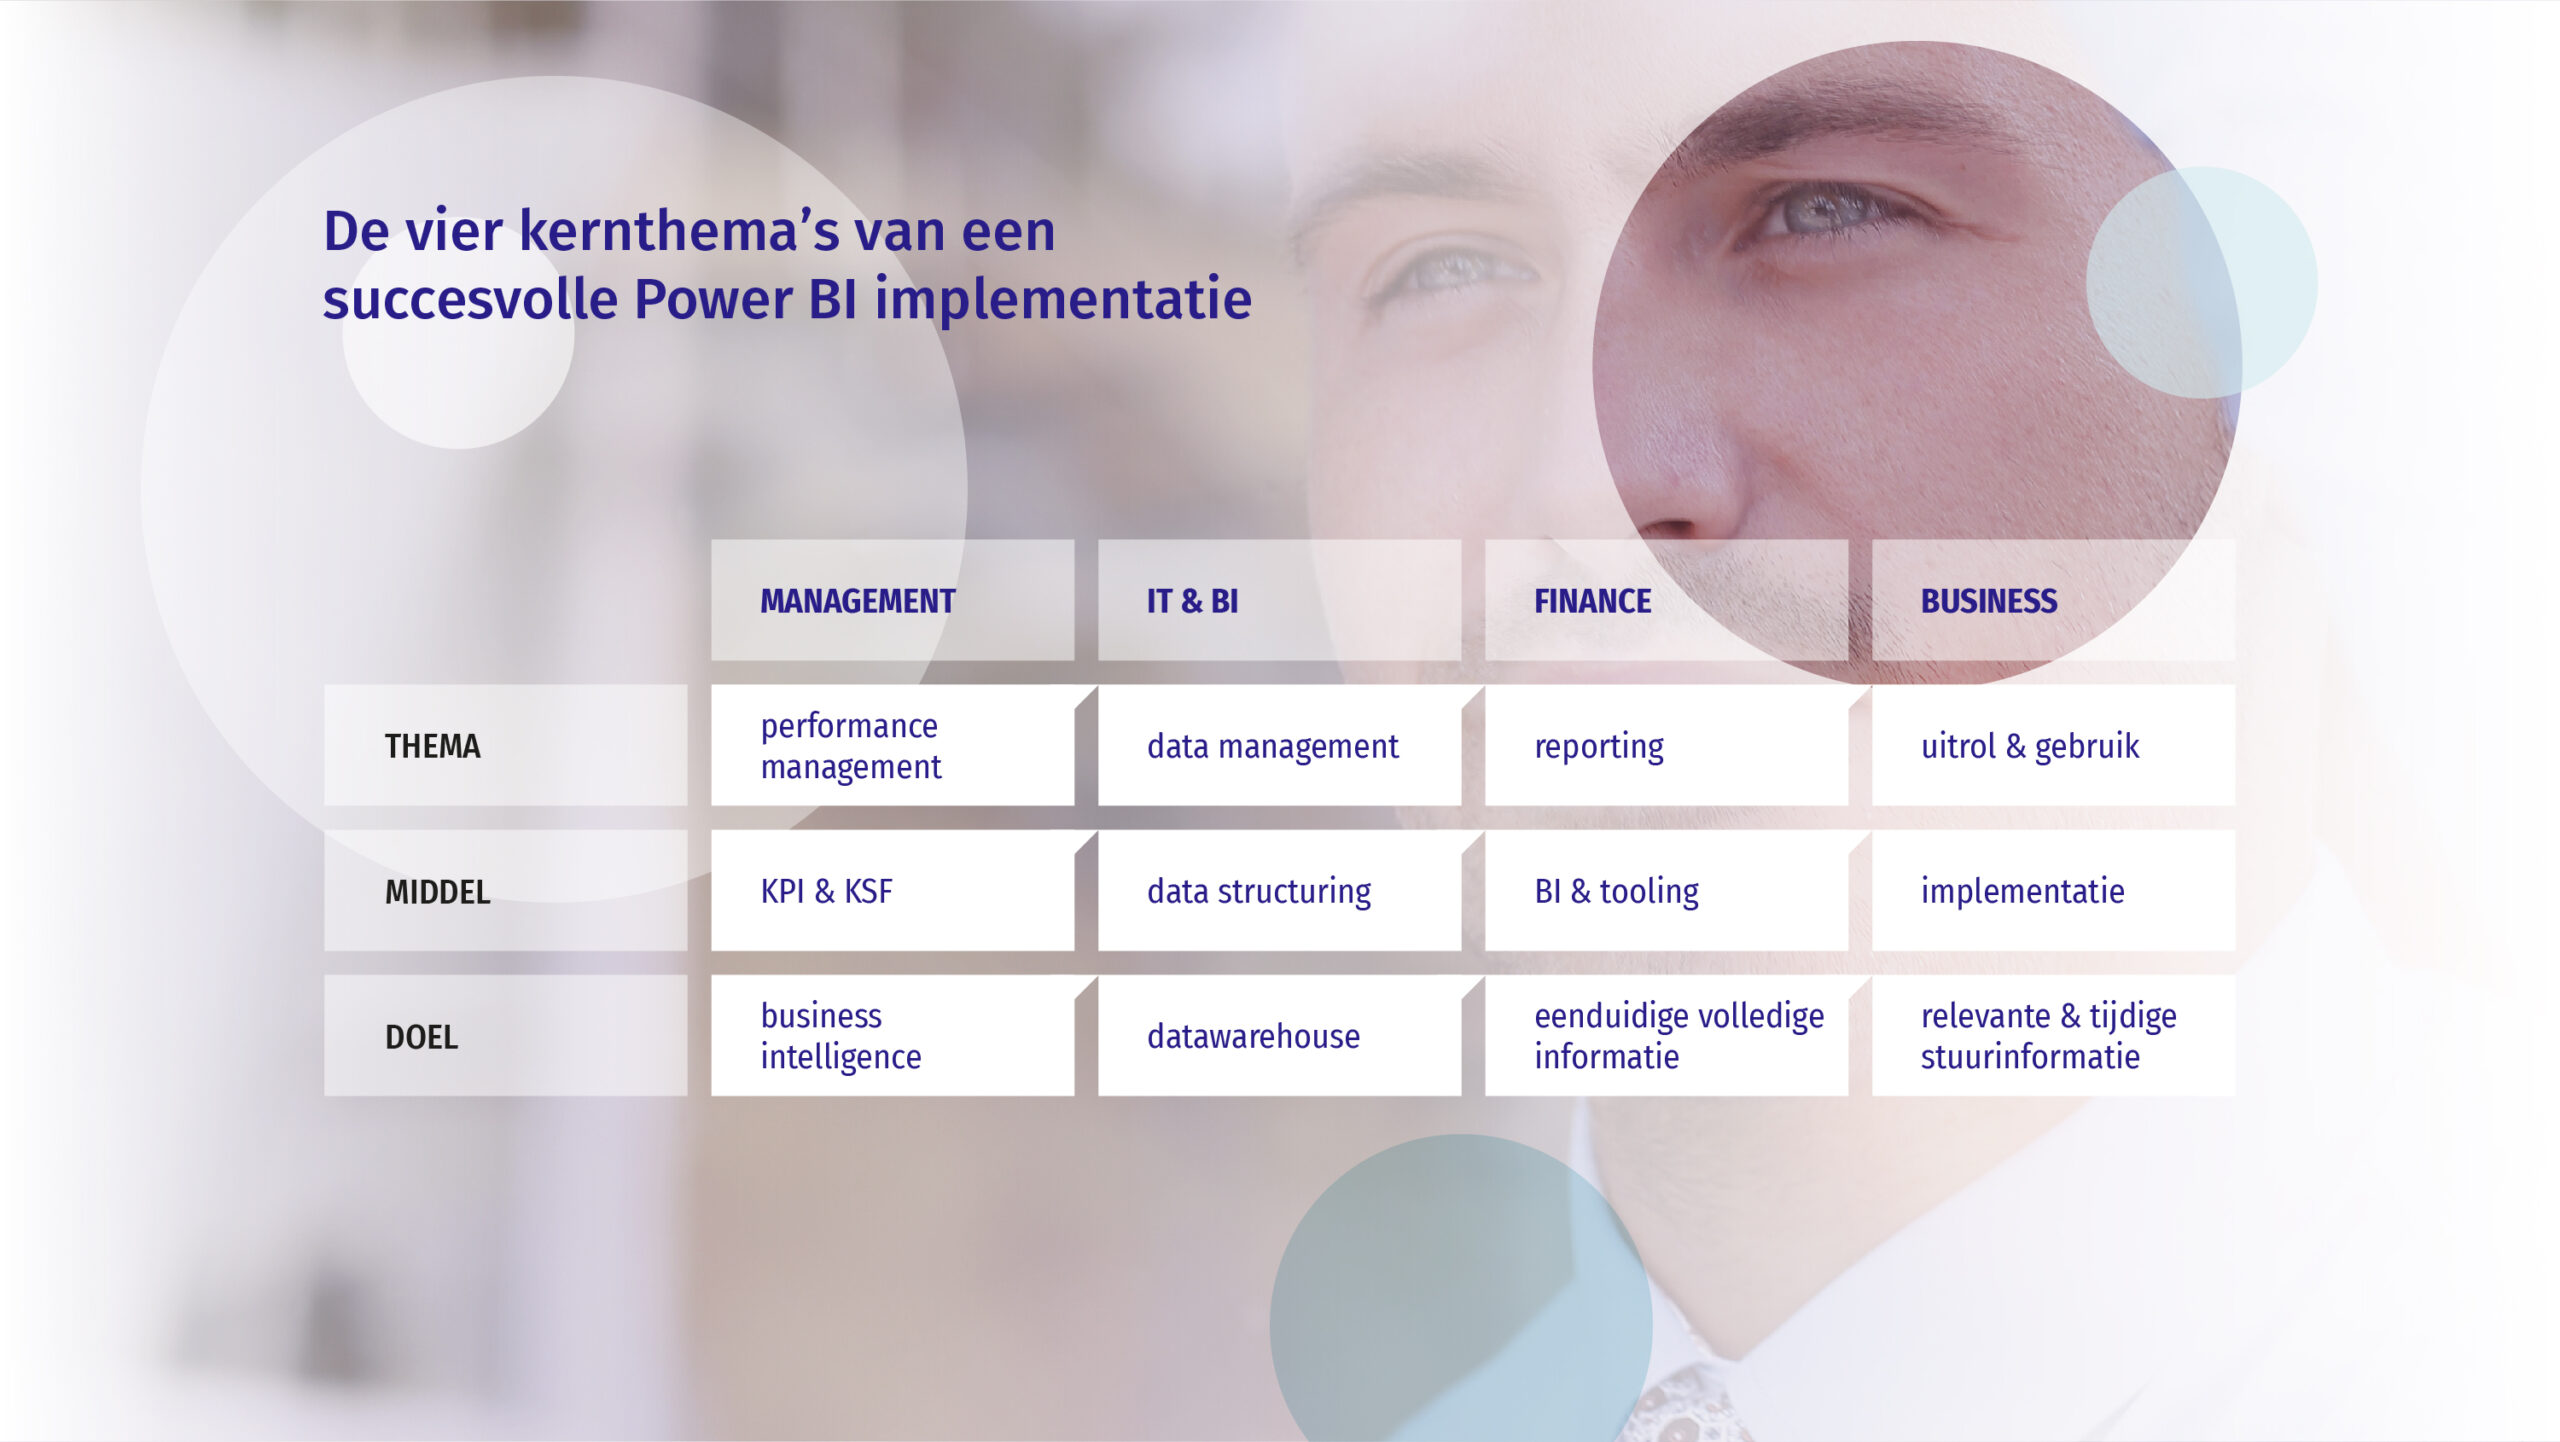 De vier kernthema's van een succesvolle Power BI implementatie